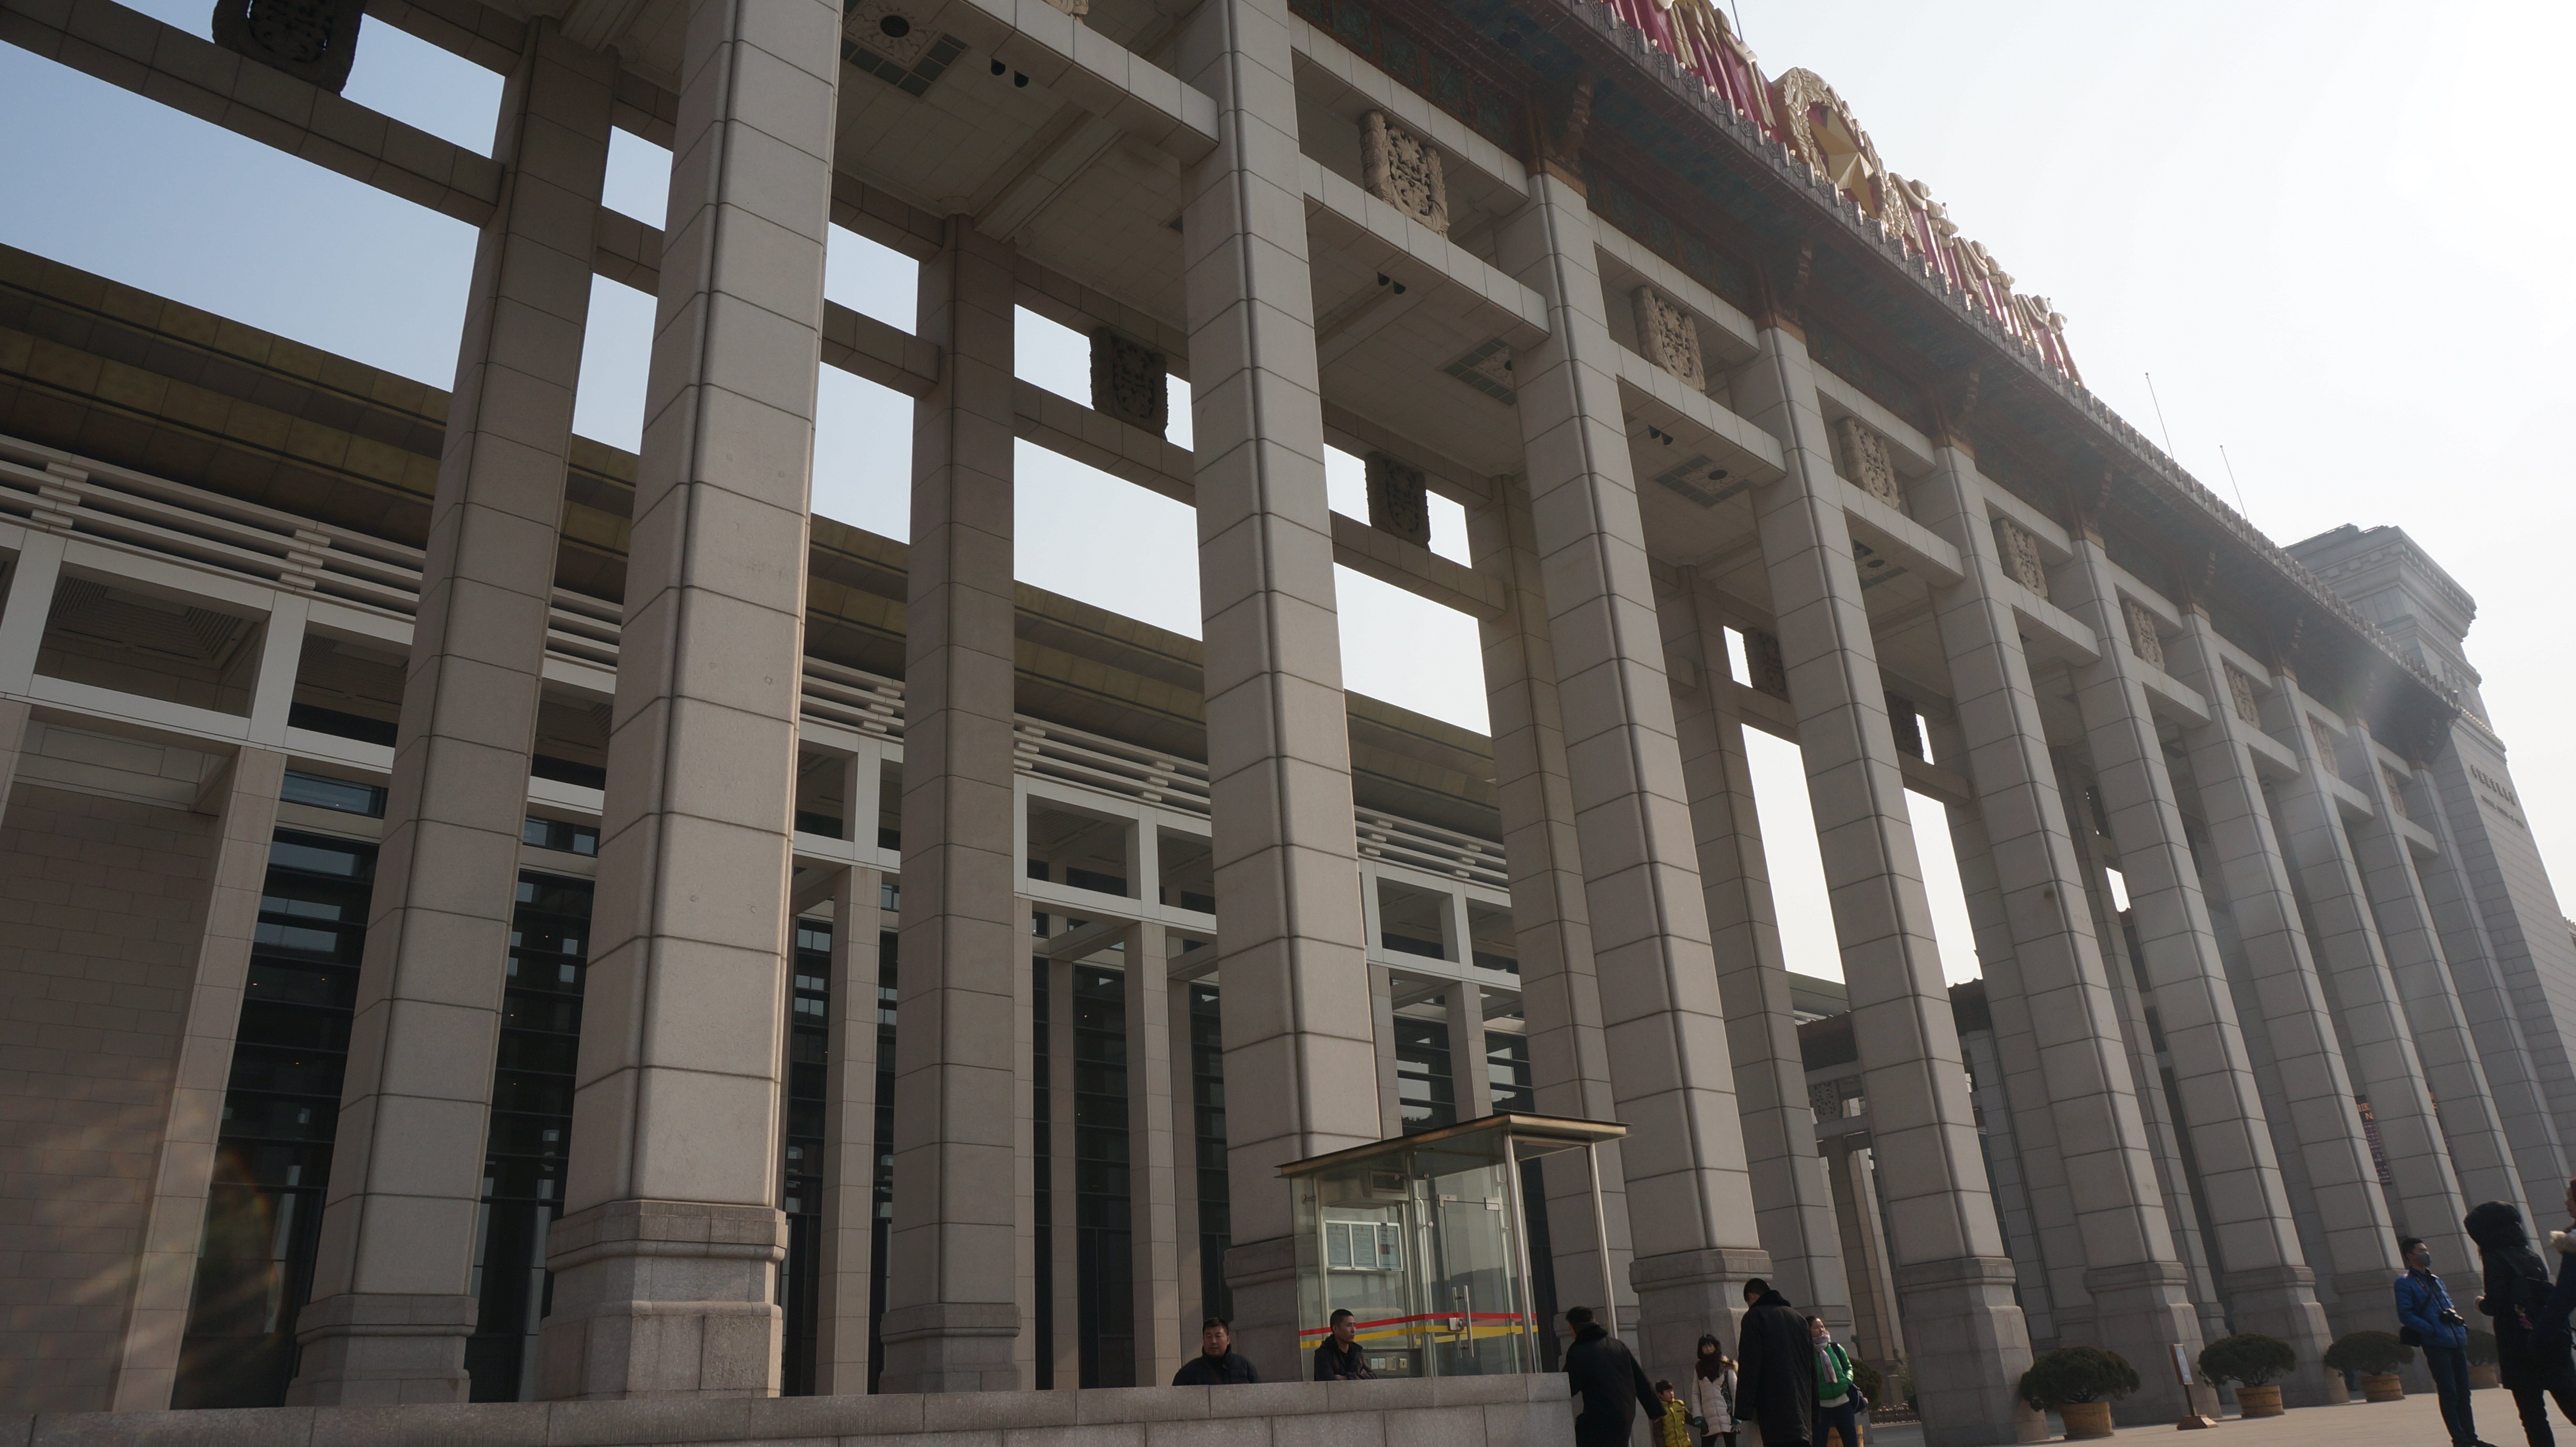 【携程攻略】北京中国国家博物馆景点,天安门广场安检